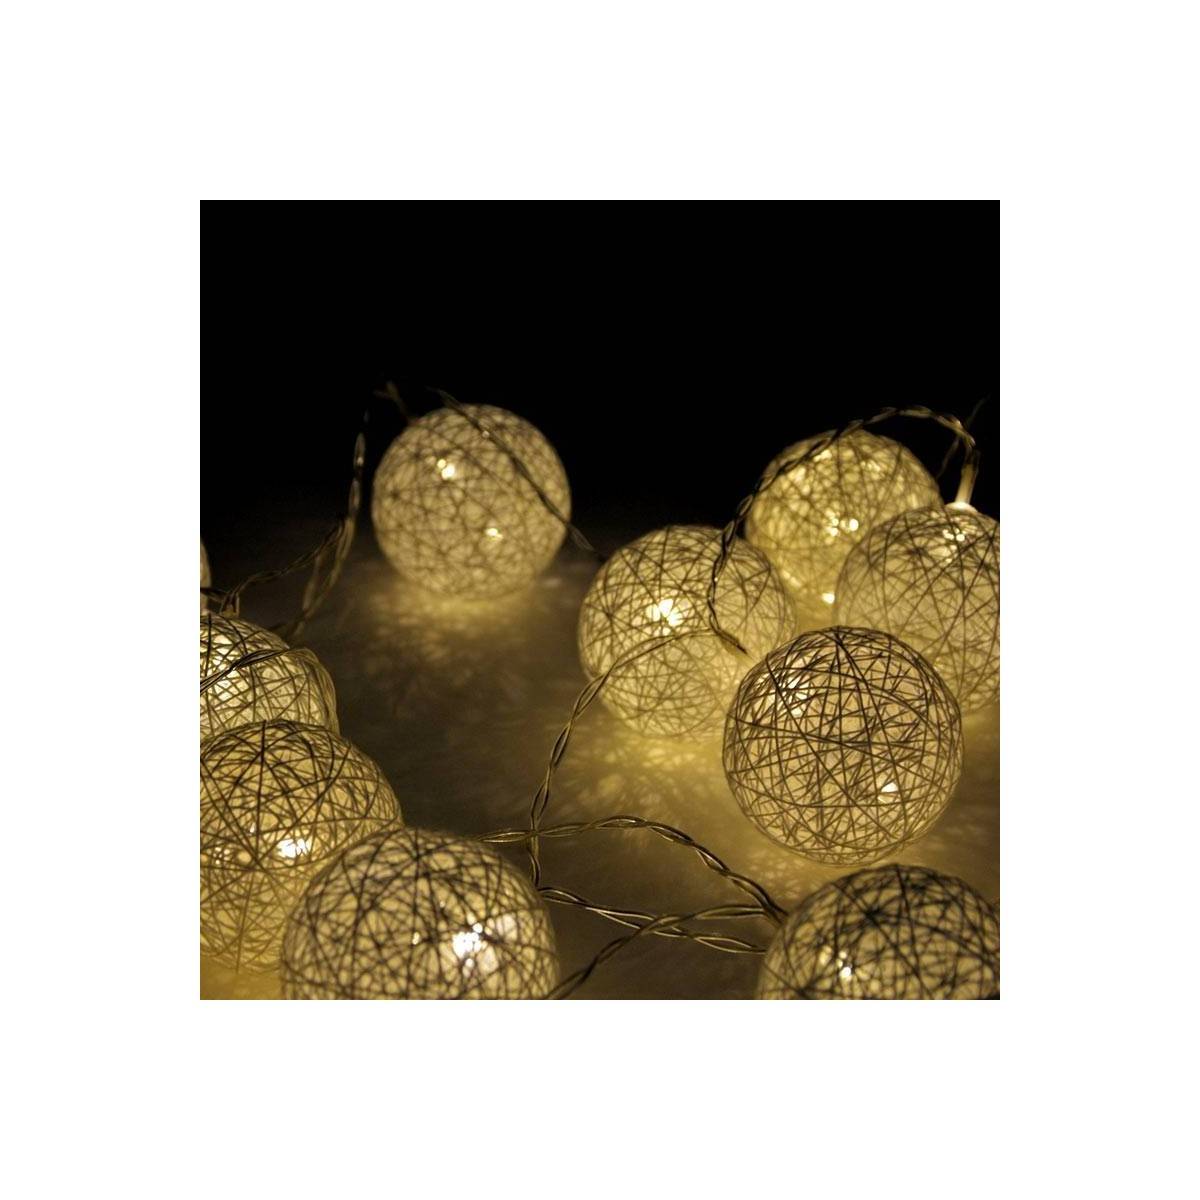 Grinalda luminosa LED de bolas de algodão com 3 metros